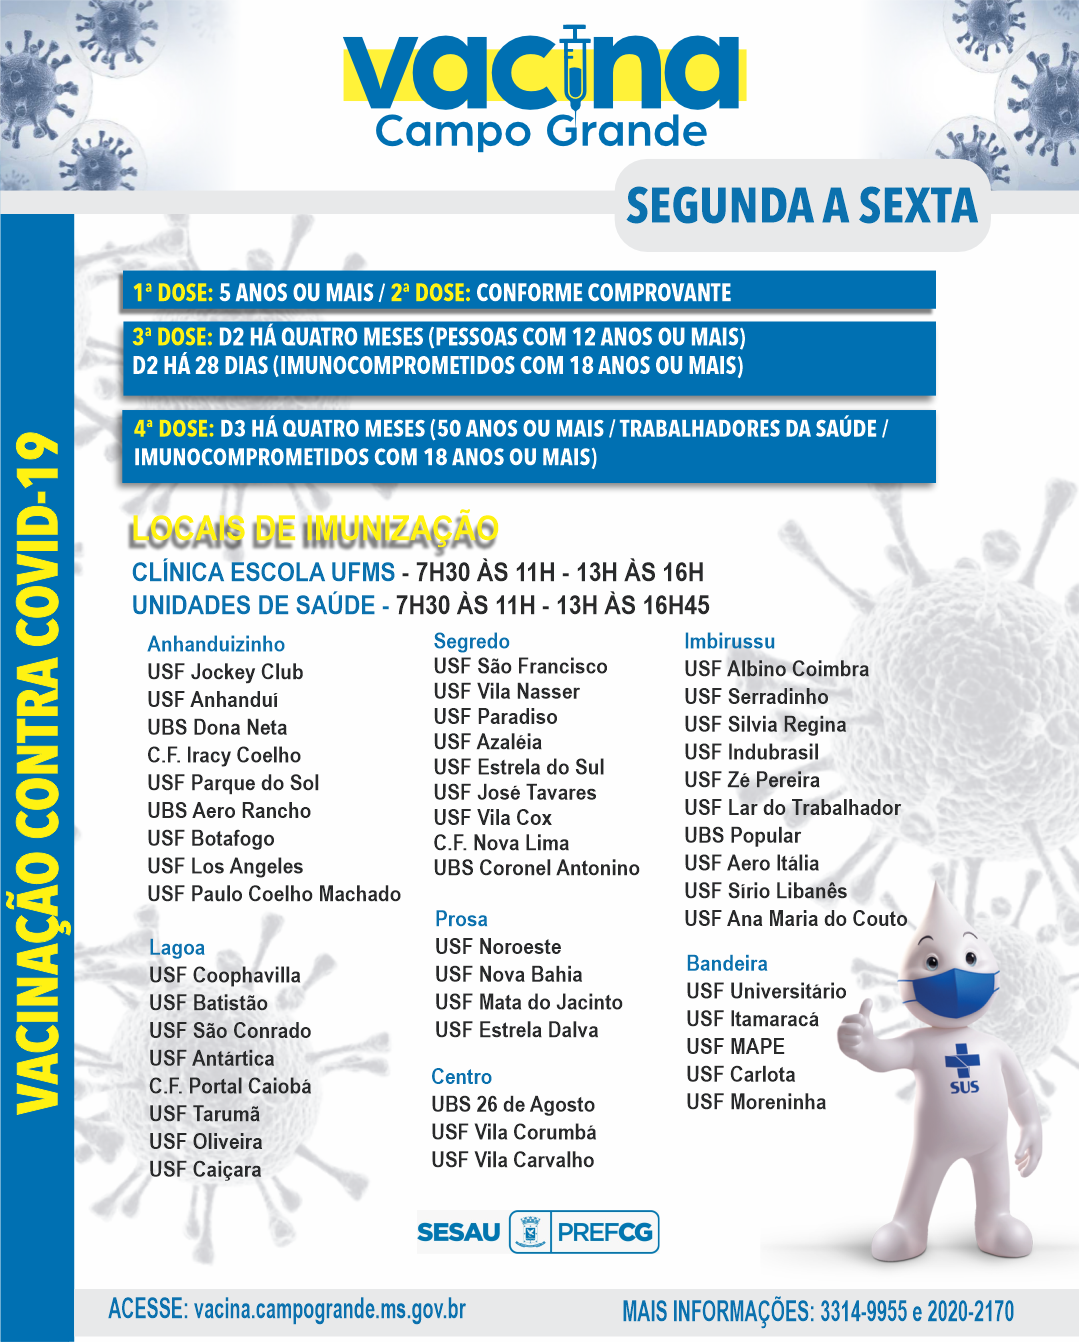 Confira público e locais para se vacinar contra a Covid-19 em Campo Grande